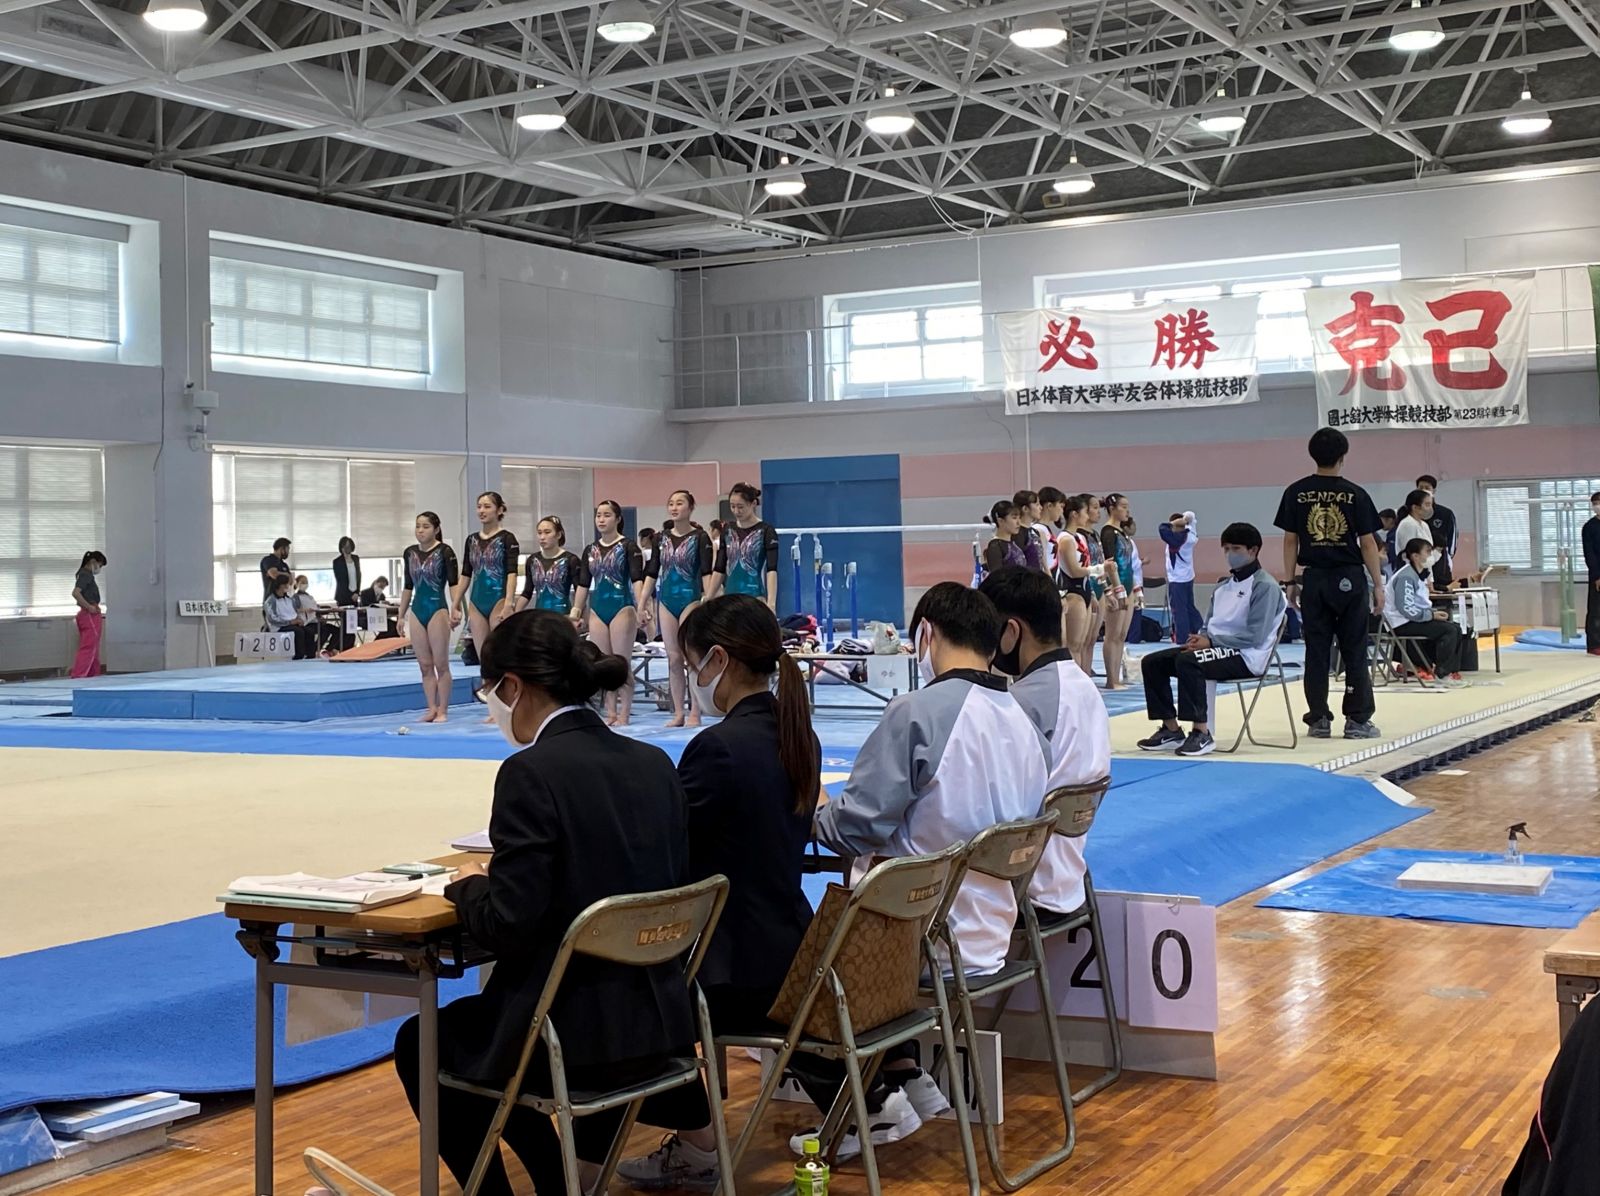 体操女子 六大学選手権を開催 本学は2位 仙台大学